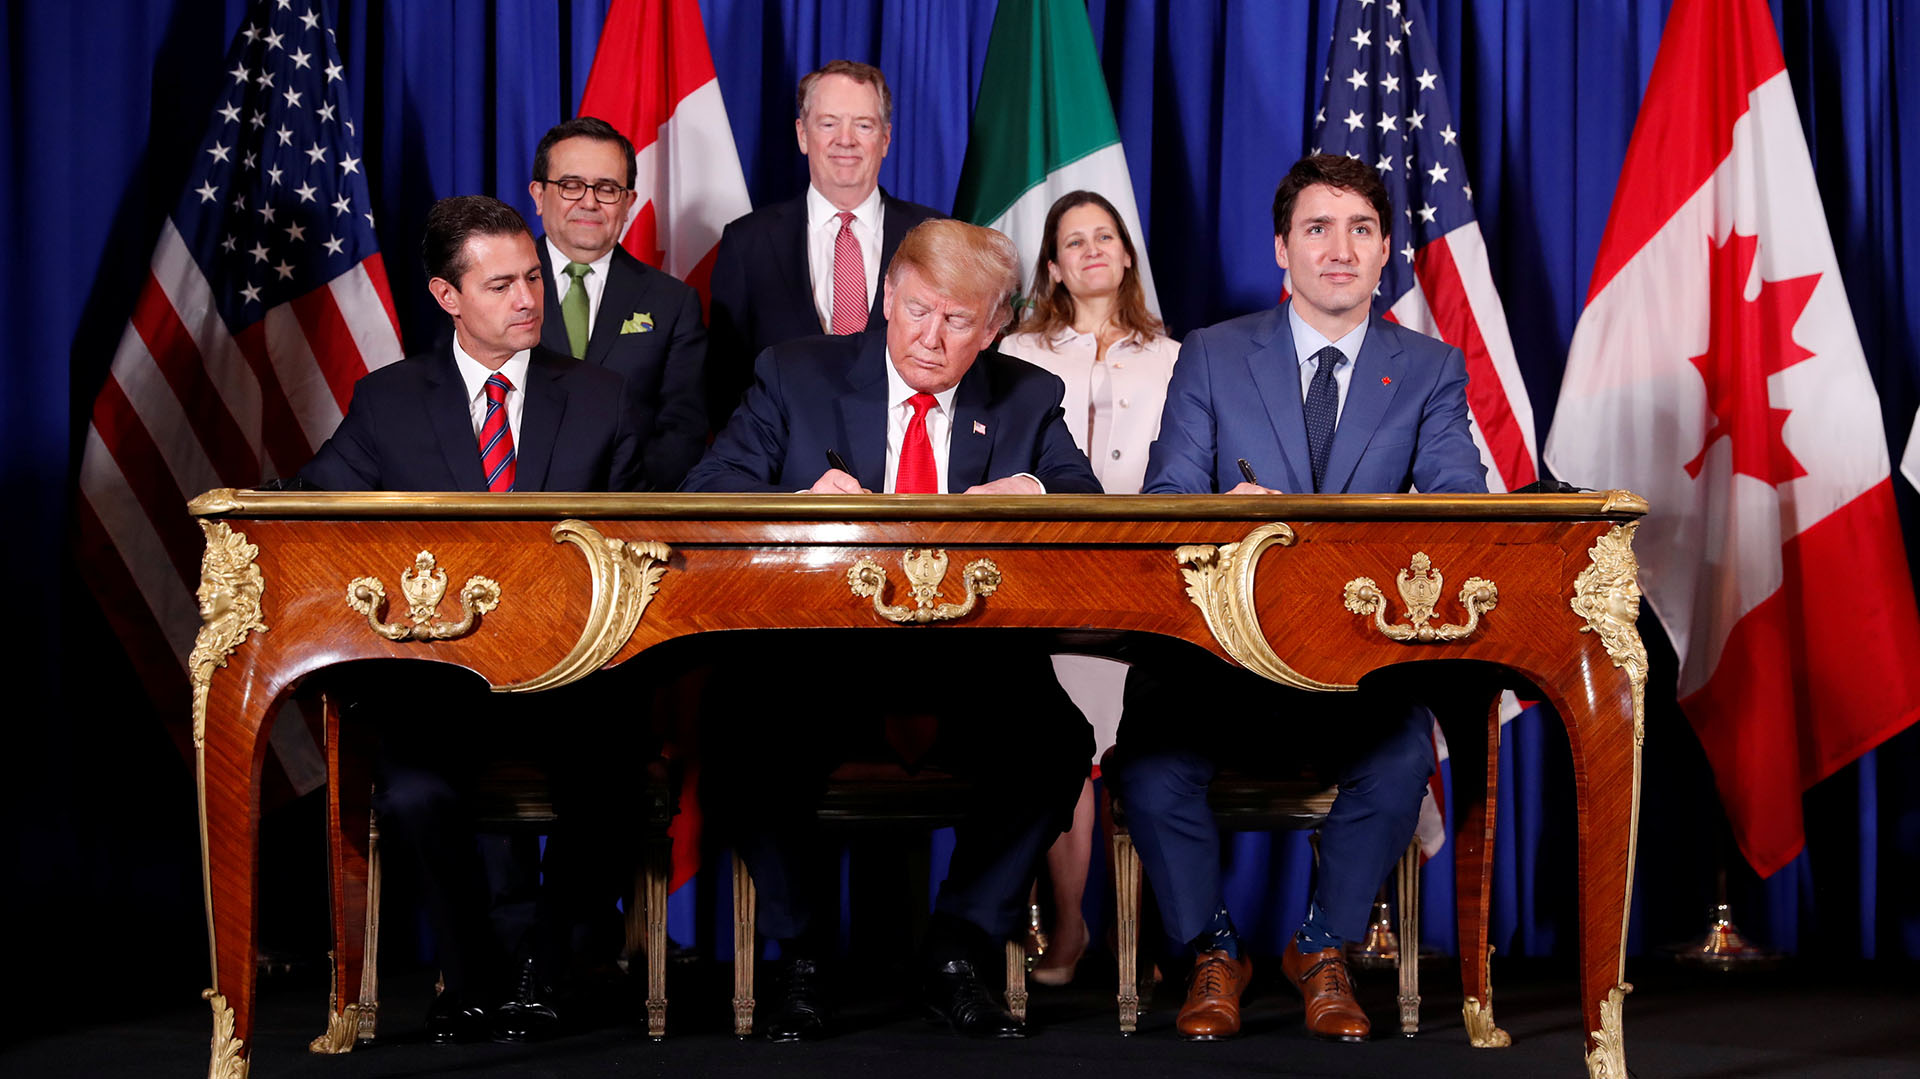 La firma del T-MEC, el nuevo acuerdo comercial entre Estados Unidos, México y Canadá, antes del inicio de la cumbre del G-20 en 2018 (REUTERS/Kevin Lamarque)